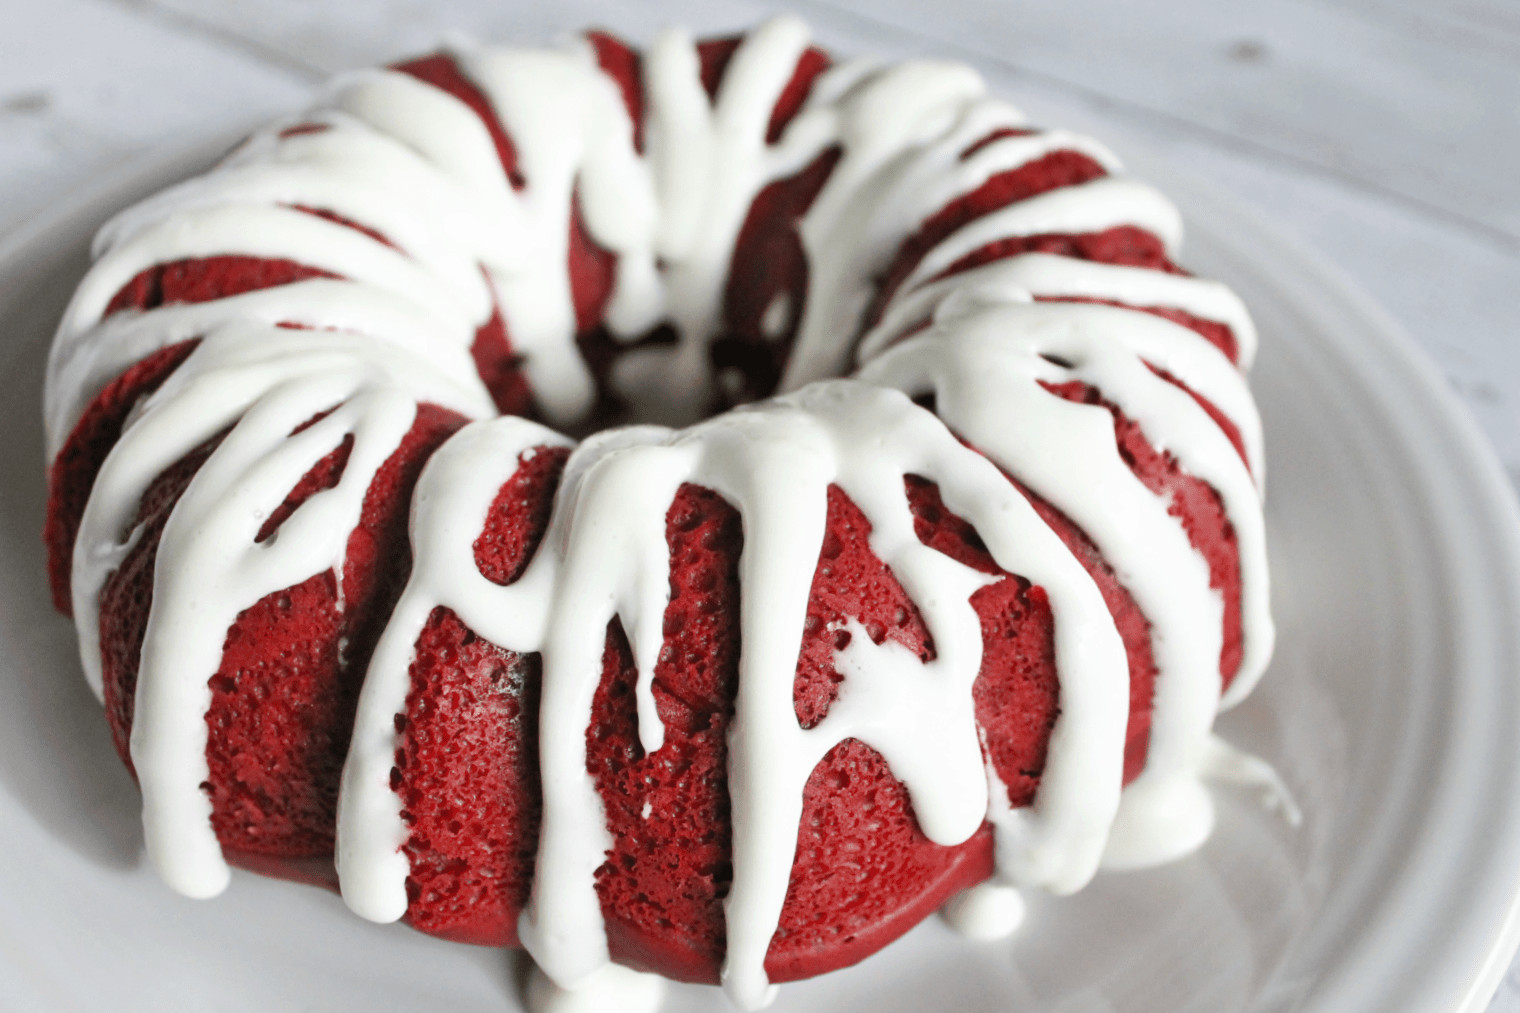 Red Velvet Bundt Cake
 How to Make Red Velvet Bundt Cake in the Instant Pot